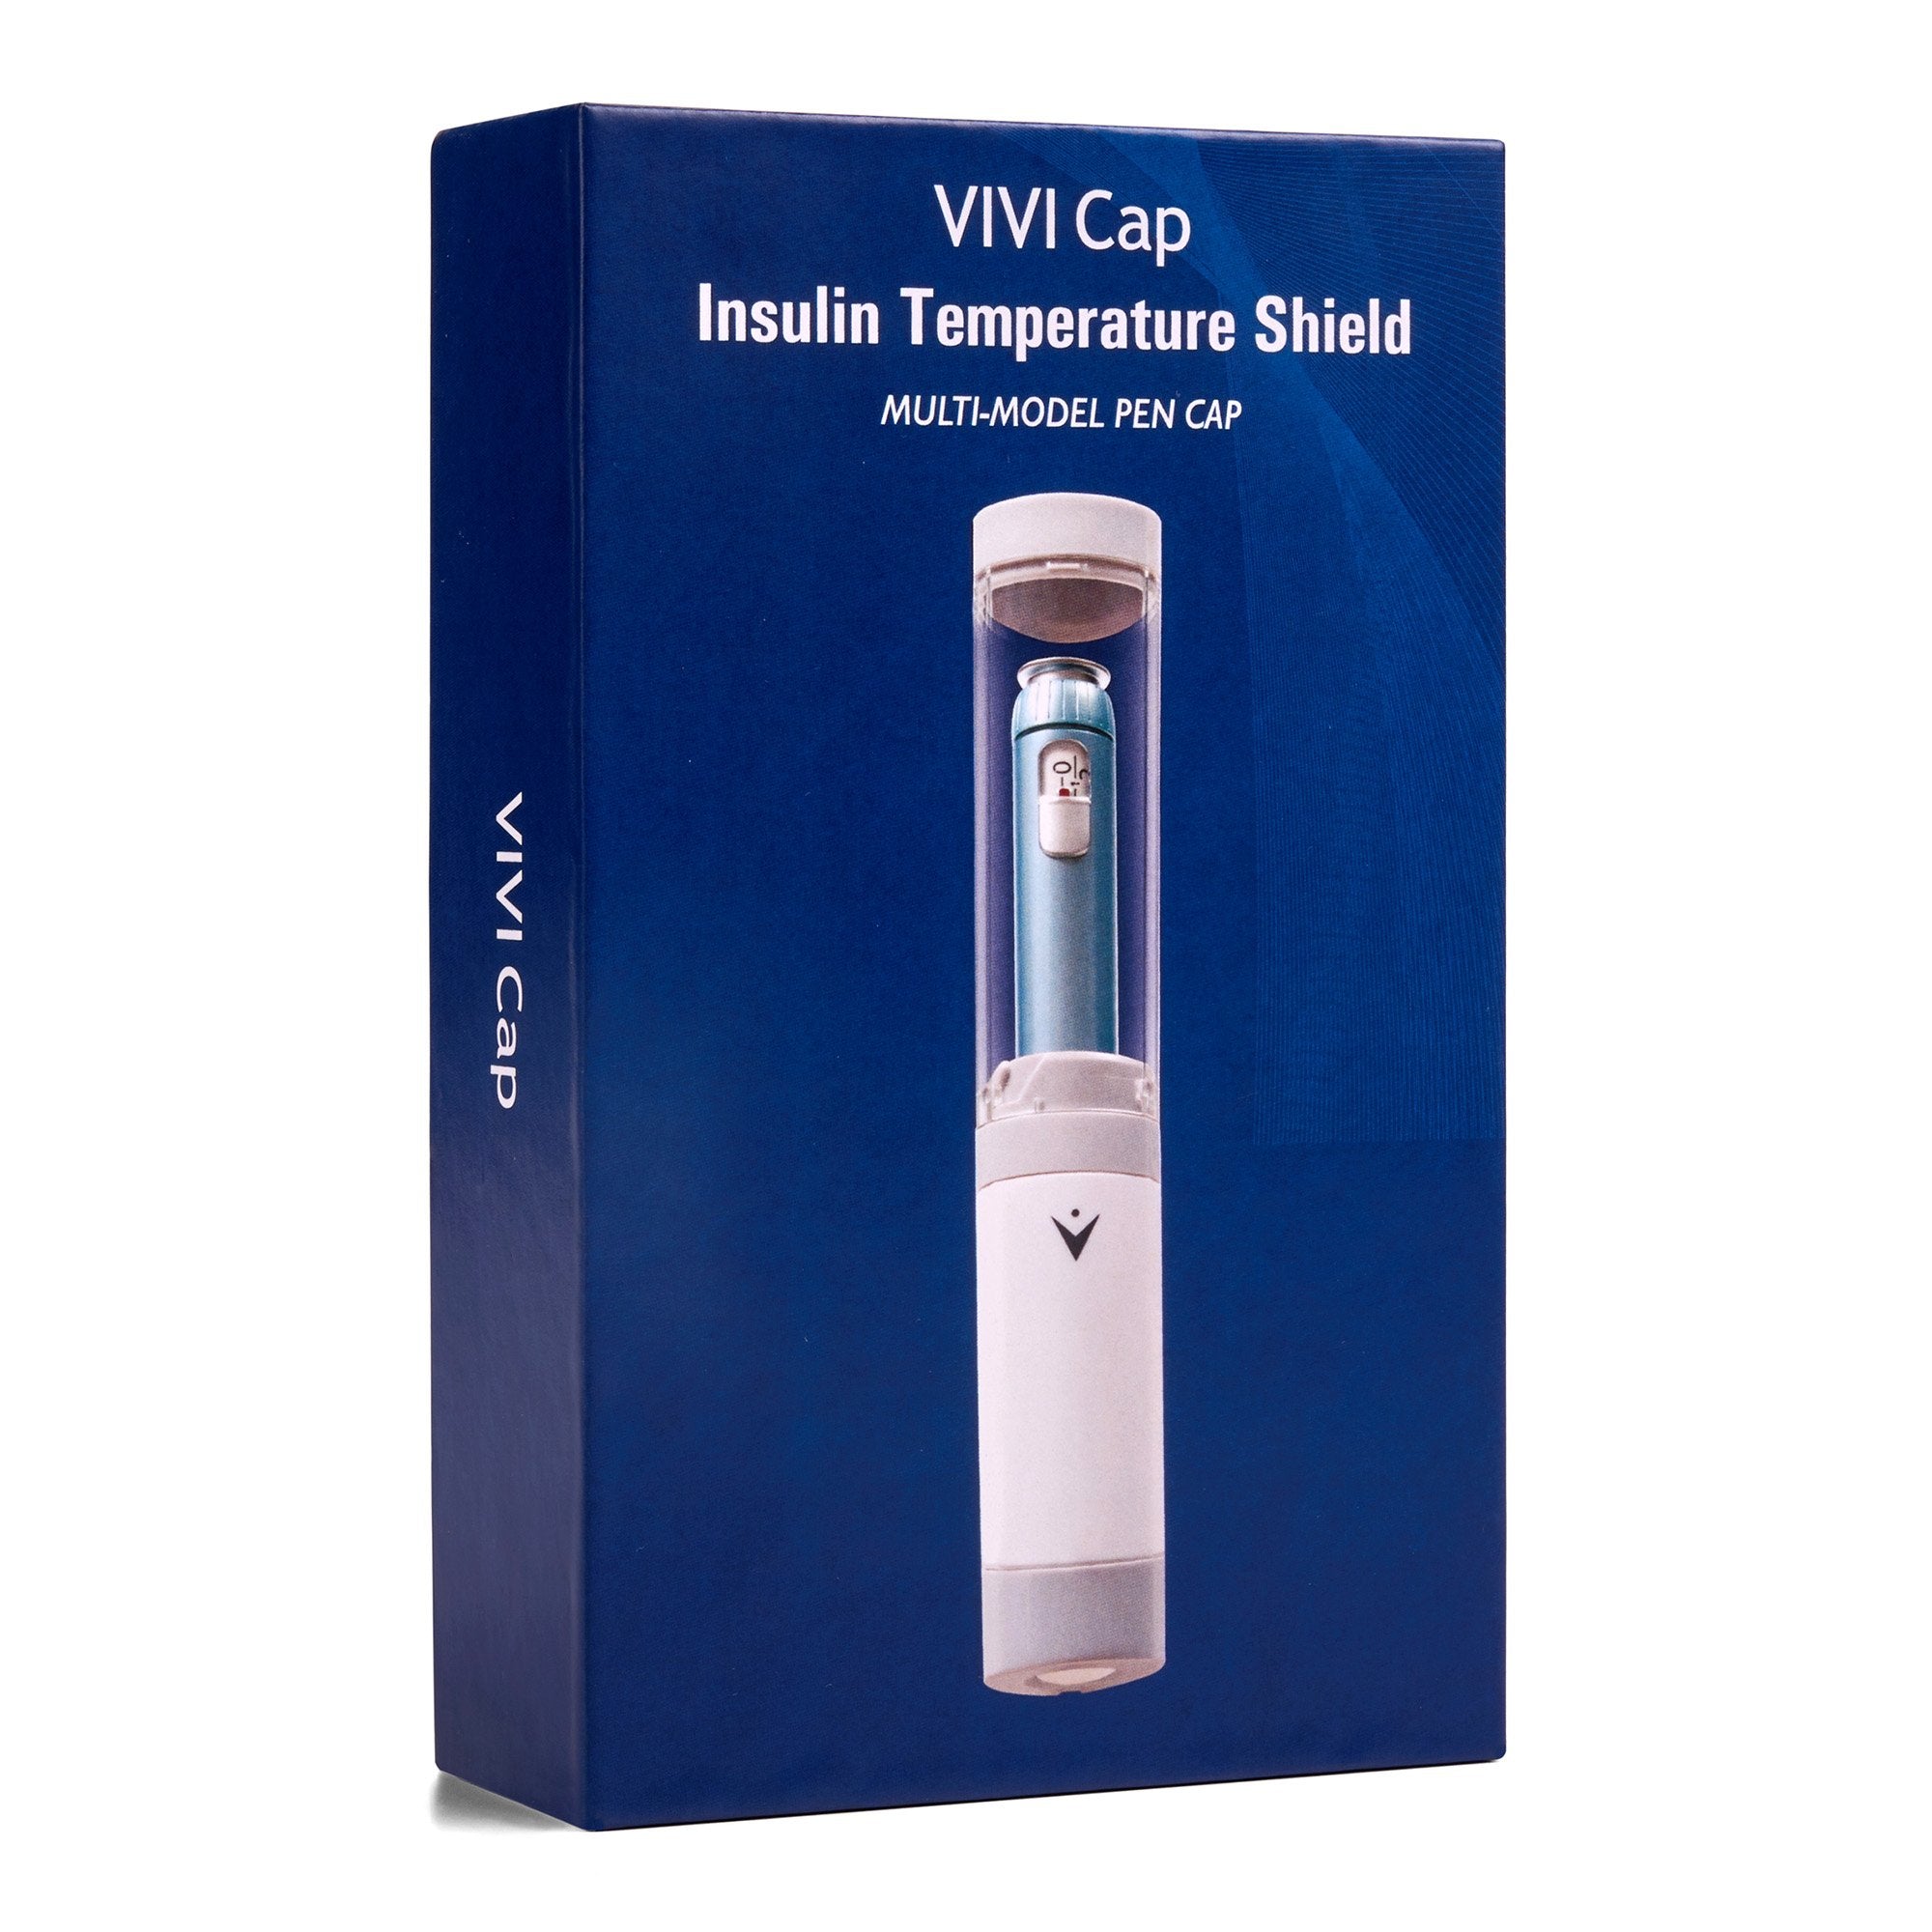 VIVI CAP Multi Insulin Pen Temperature Shield for Pre-Filled and Refillable Pens (1 Unit)